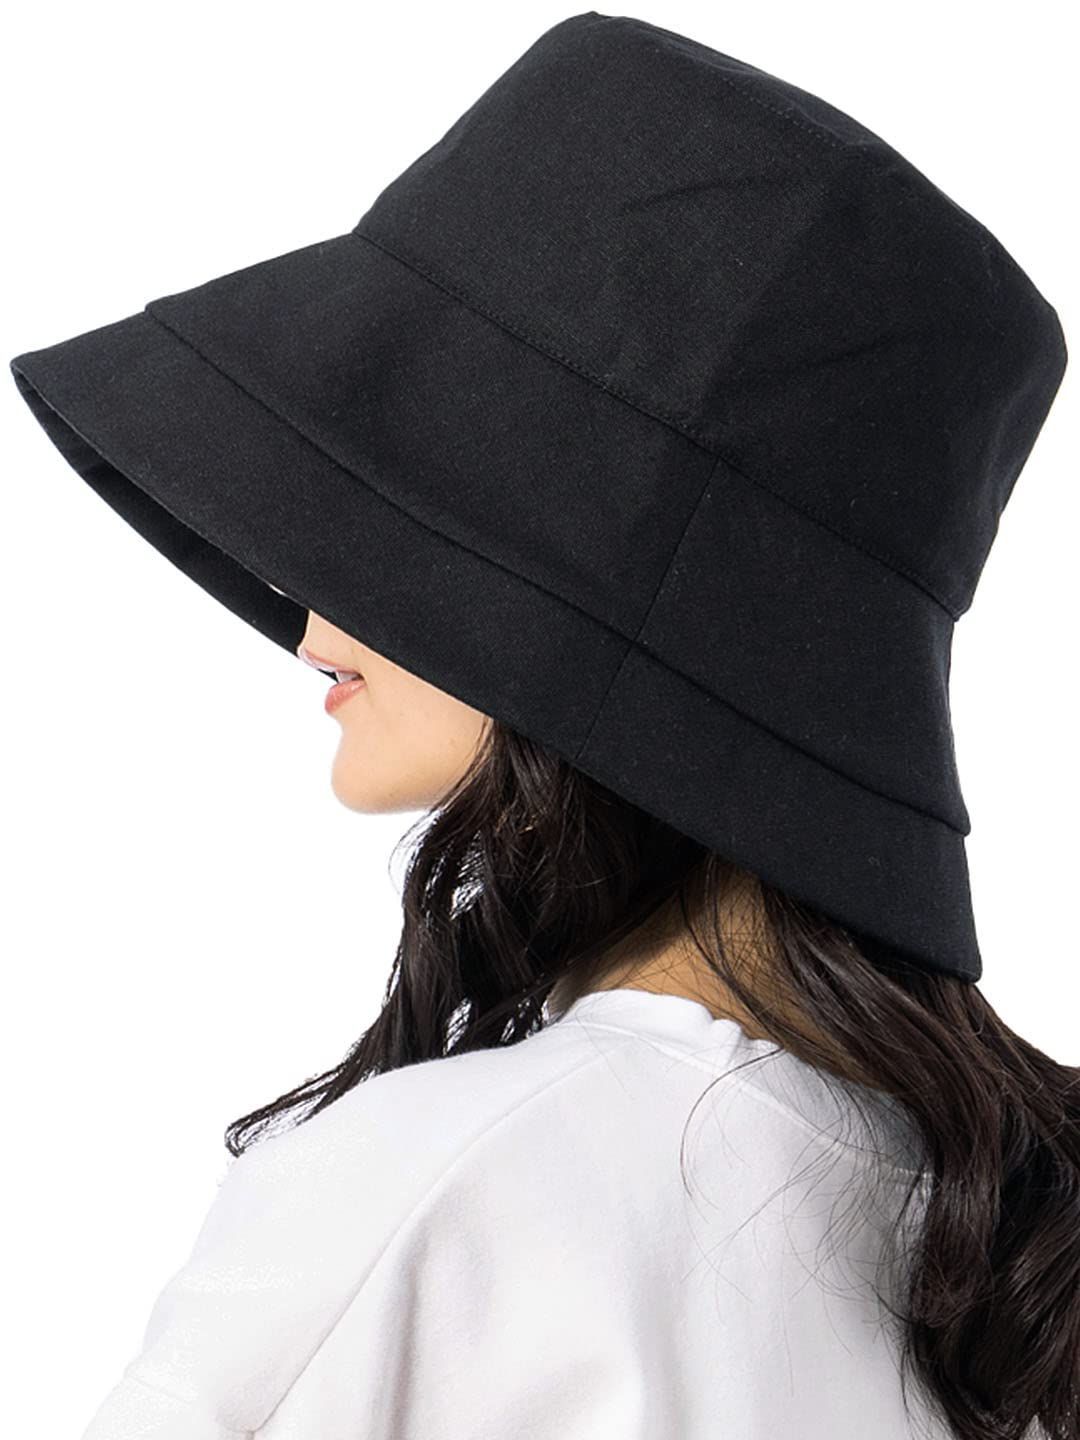 QUEENHEAD クイーンヘッド帽子 レディース UVカット 大きいサイズ 小顔 紐付き麻ポリブリムハット ハット つば広 紫外線対策 女優帽 